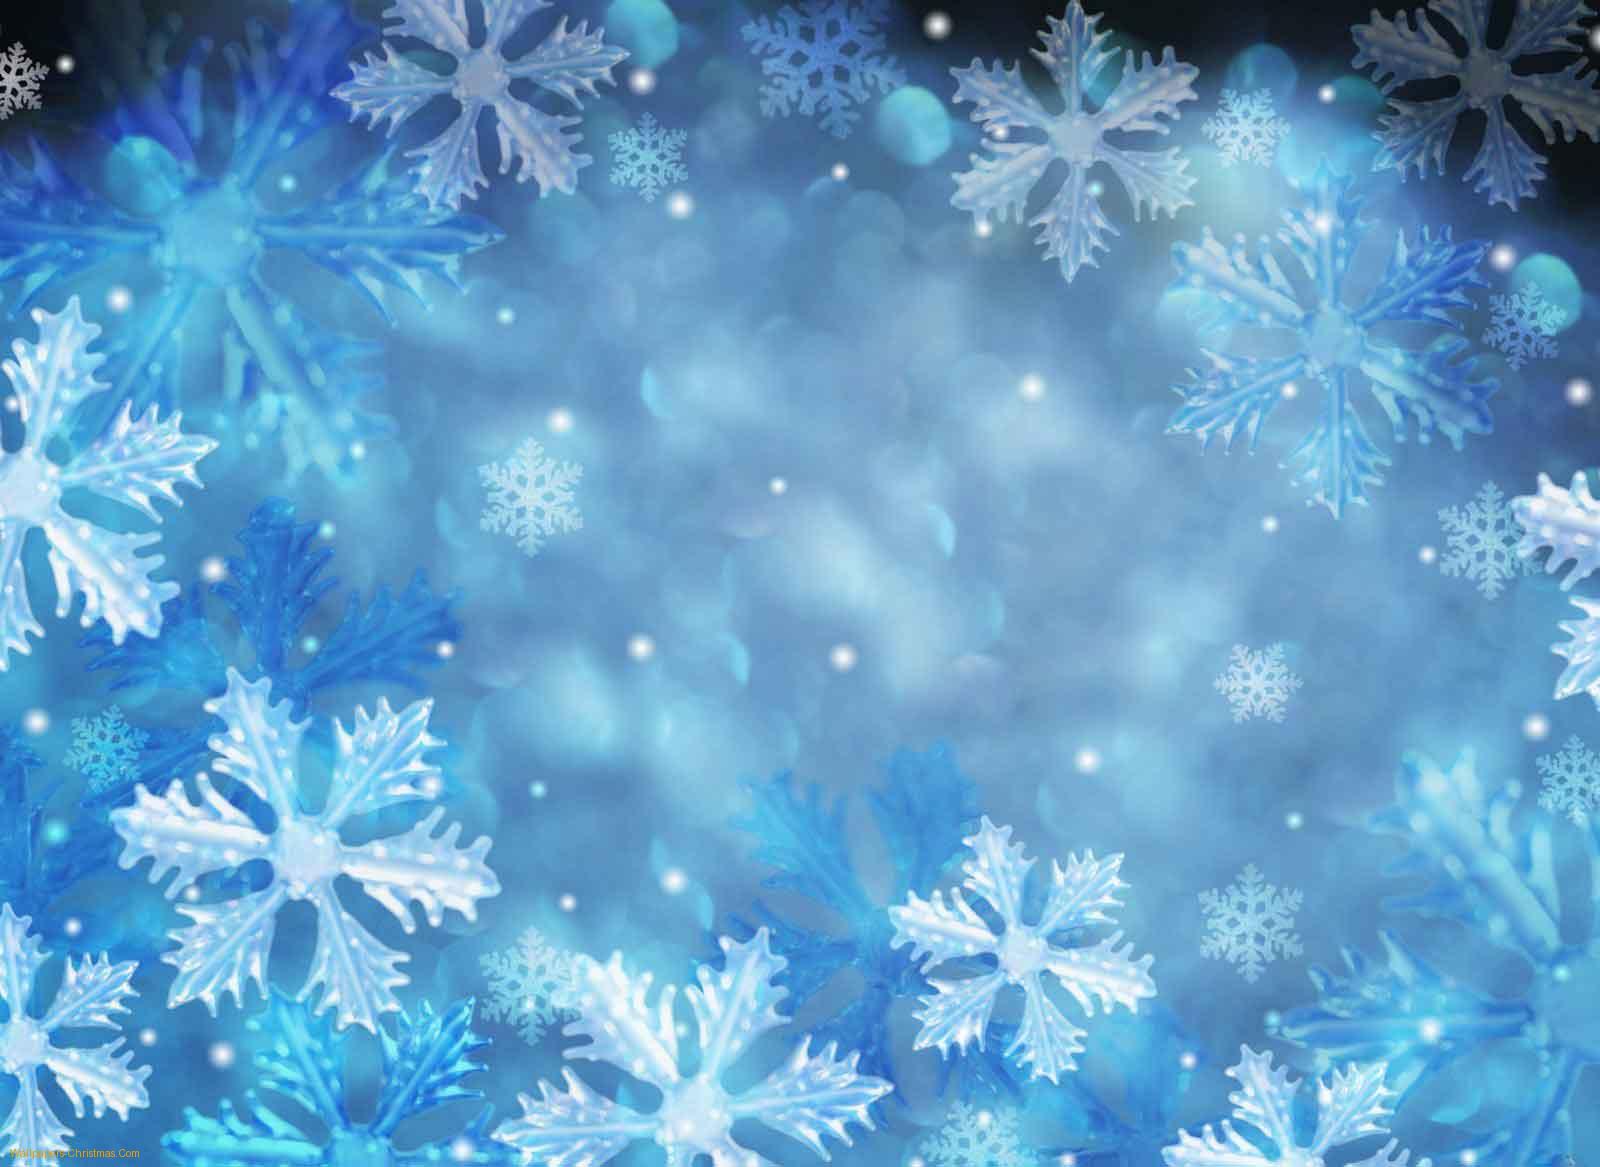 [49+] Animated Christmas Wallpaper Snow Falling on WallpaperSafari